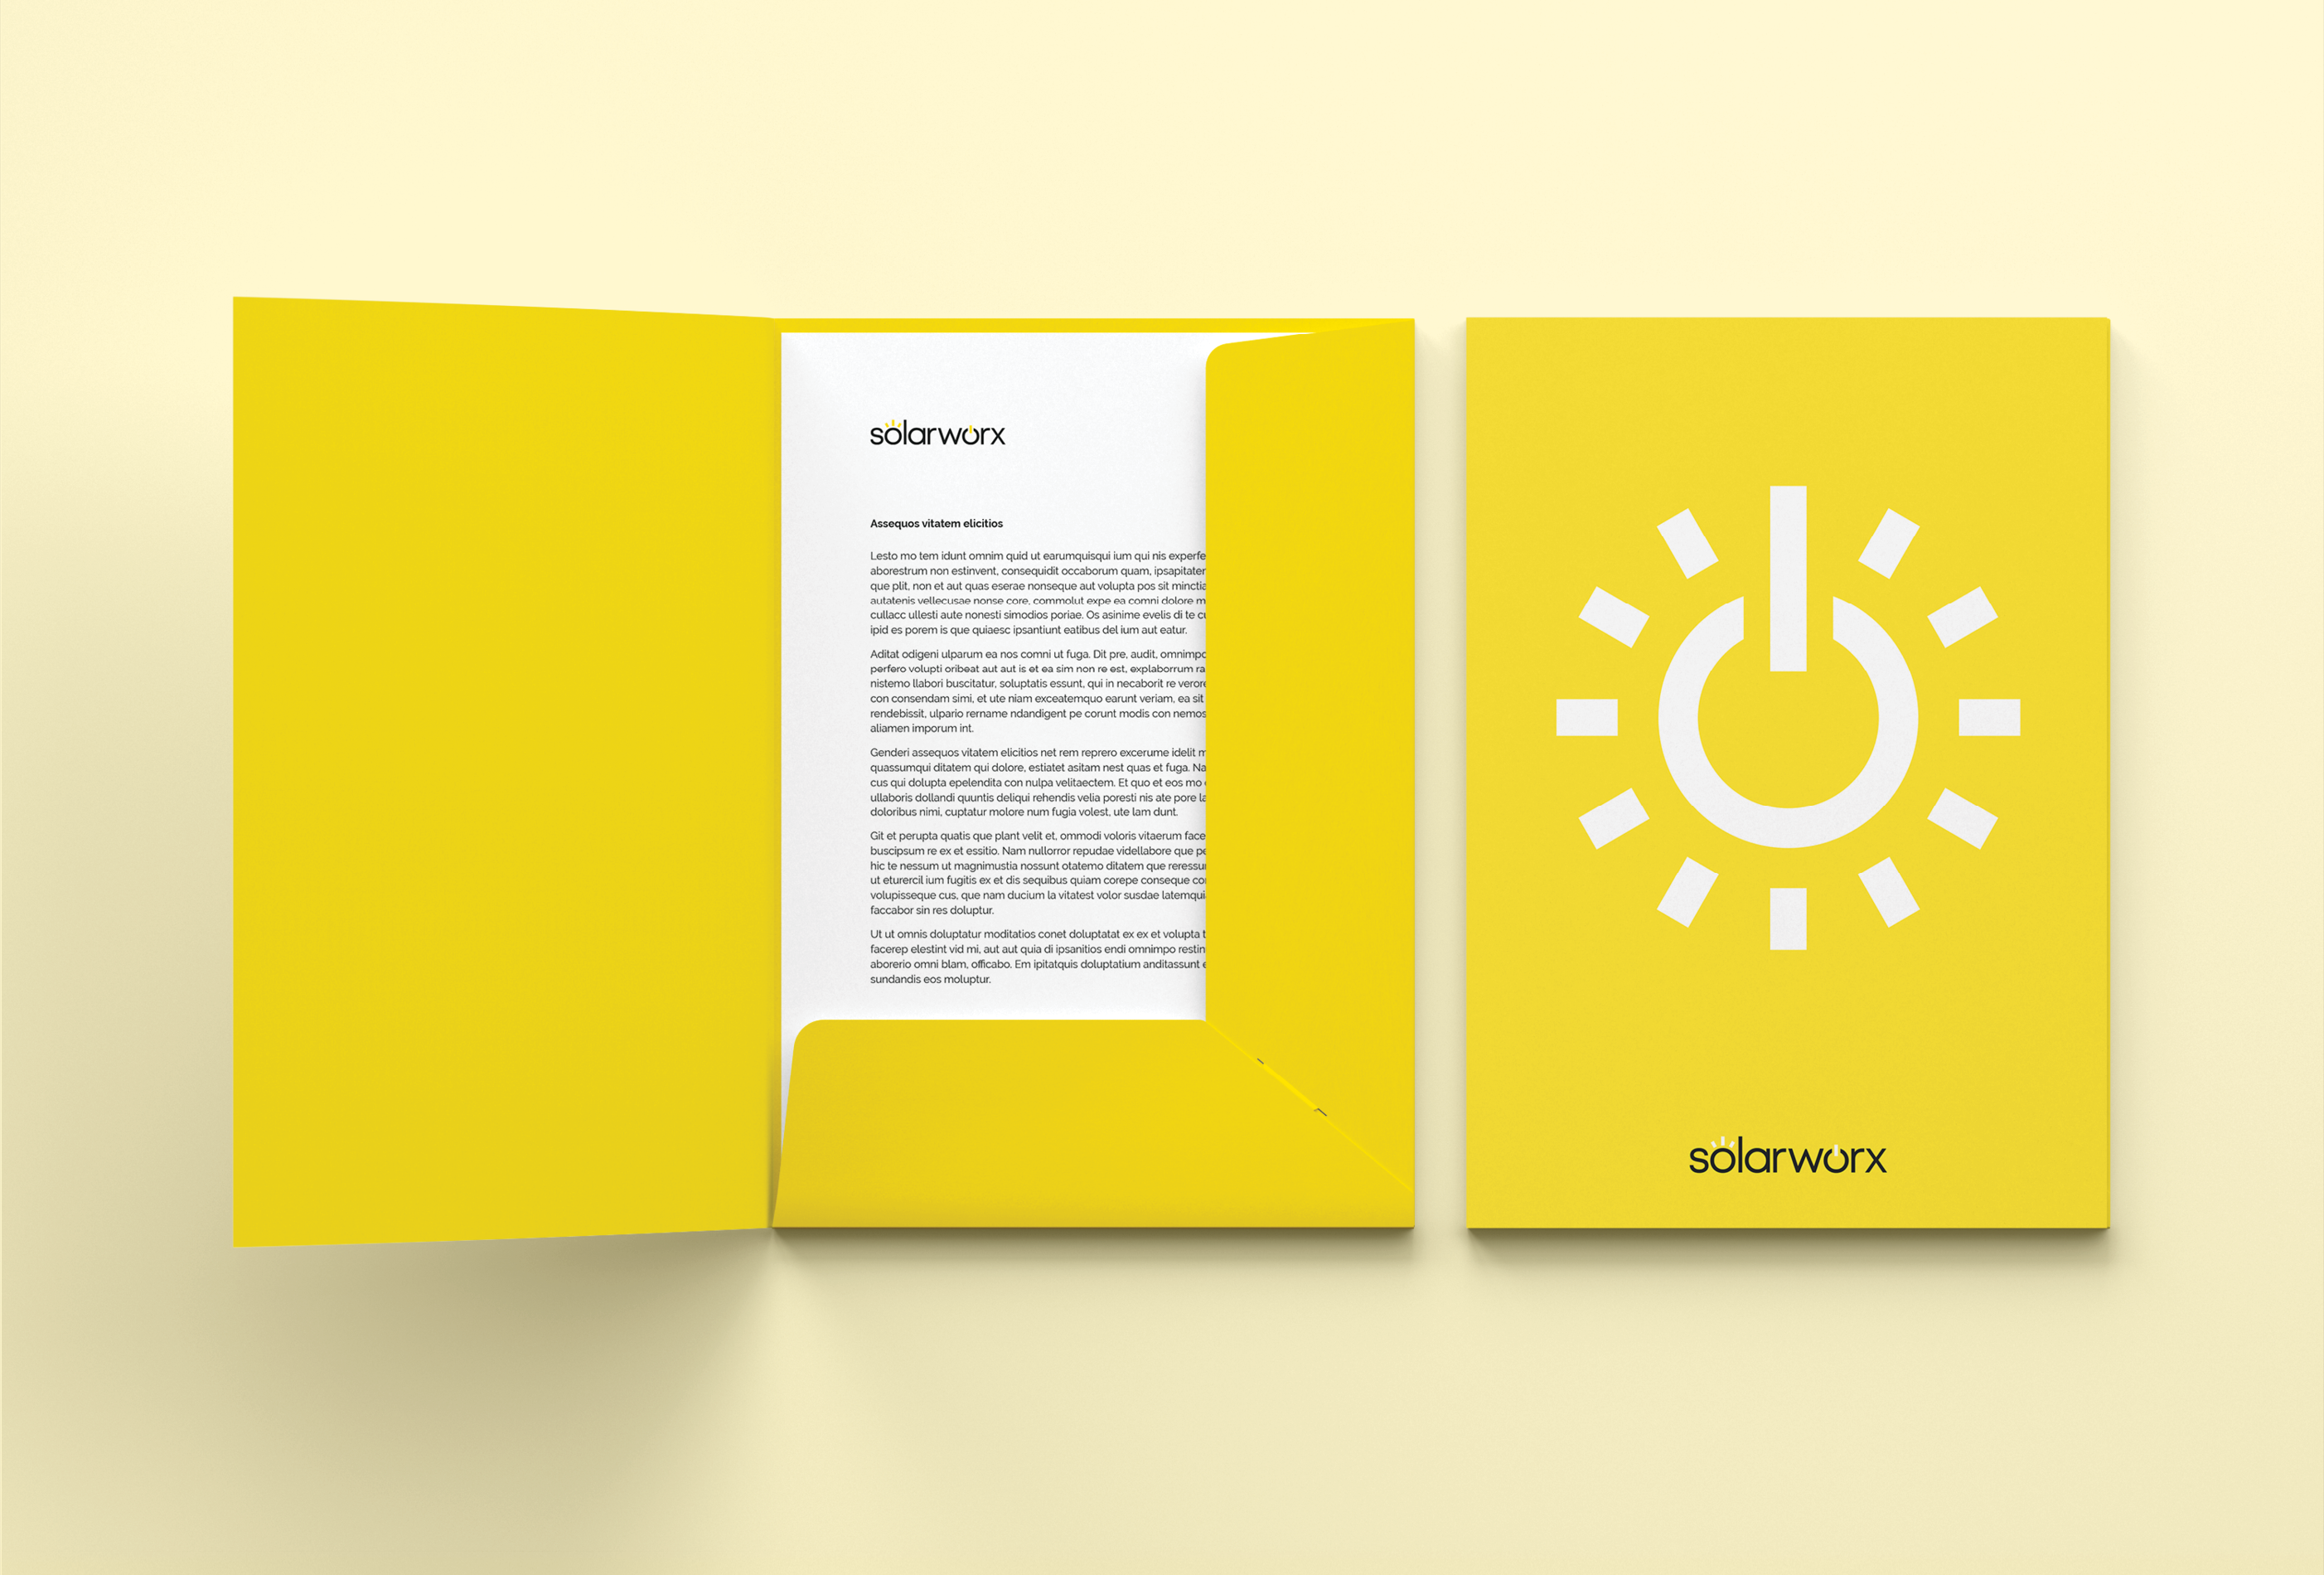 Solarworx presentation folder